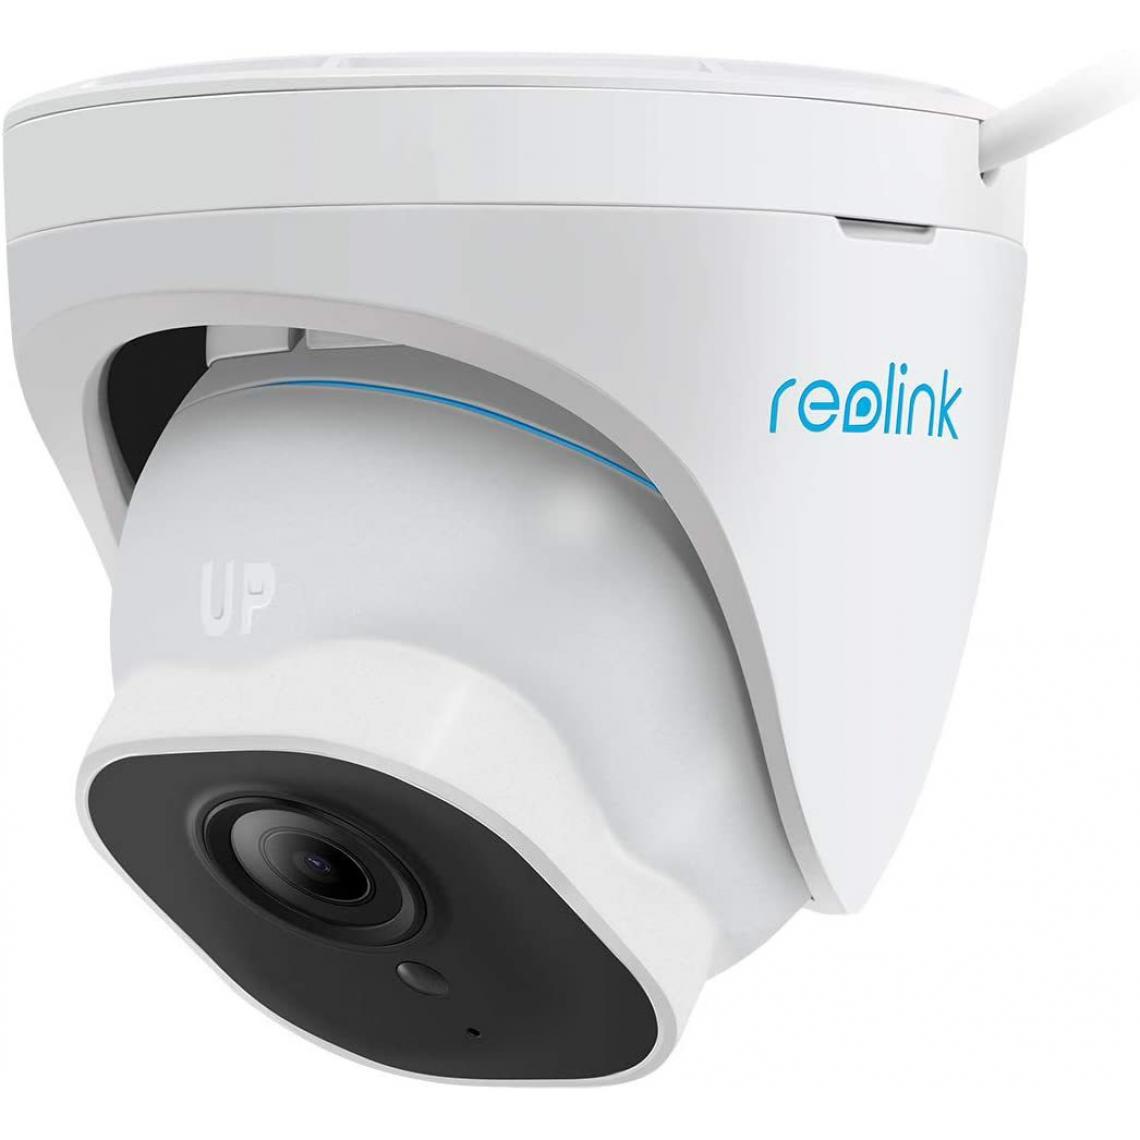 Reolink - Caméra de Surveillance Extérieure 5MP PoE Dôme avec Détection Personne/Véhicule, RLC-520A Caméra IP avec Etanche IP66, Time Lapse, Vision Nocturne IR - Caméra de surveillance connectée